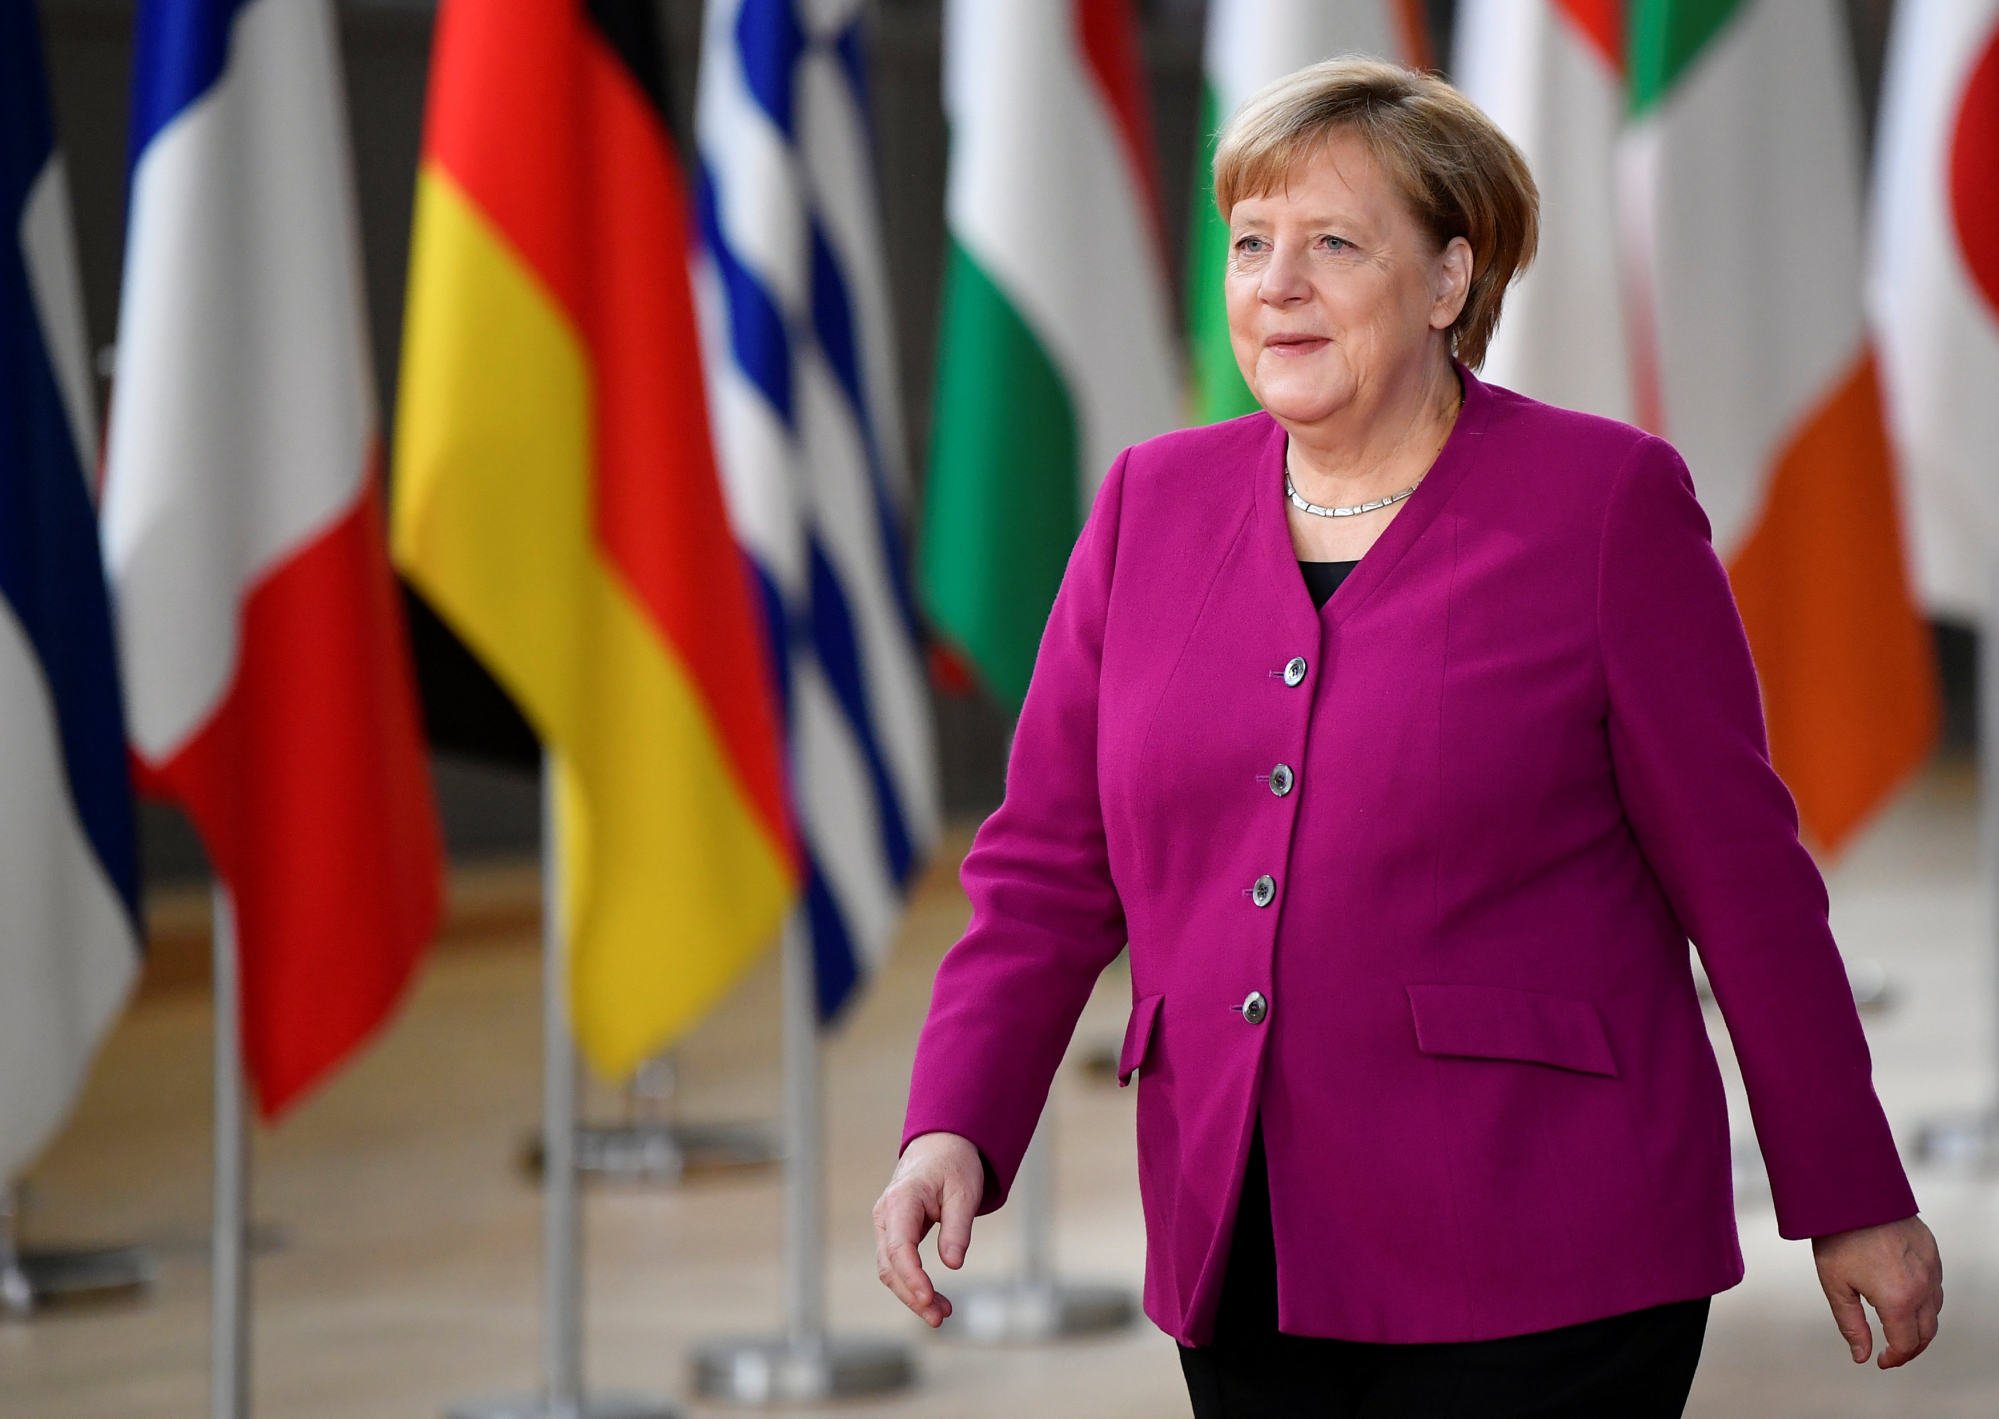 Vào tháng 10/2018, trong cuộc gặp với các nhà lãnh đạo Liên minh châu Âu tại Brussels, Bỉ, bà Merkel trông đầy quyền lực và trang trọng, mặc chiếc áo khoác một bên ngực màu aubergine kết hợp với một chiếc vòng cổ đơn giản và hầu như không trang điểm.